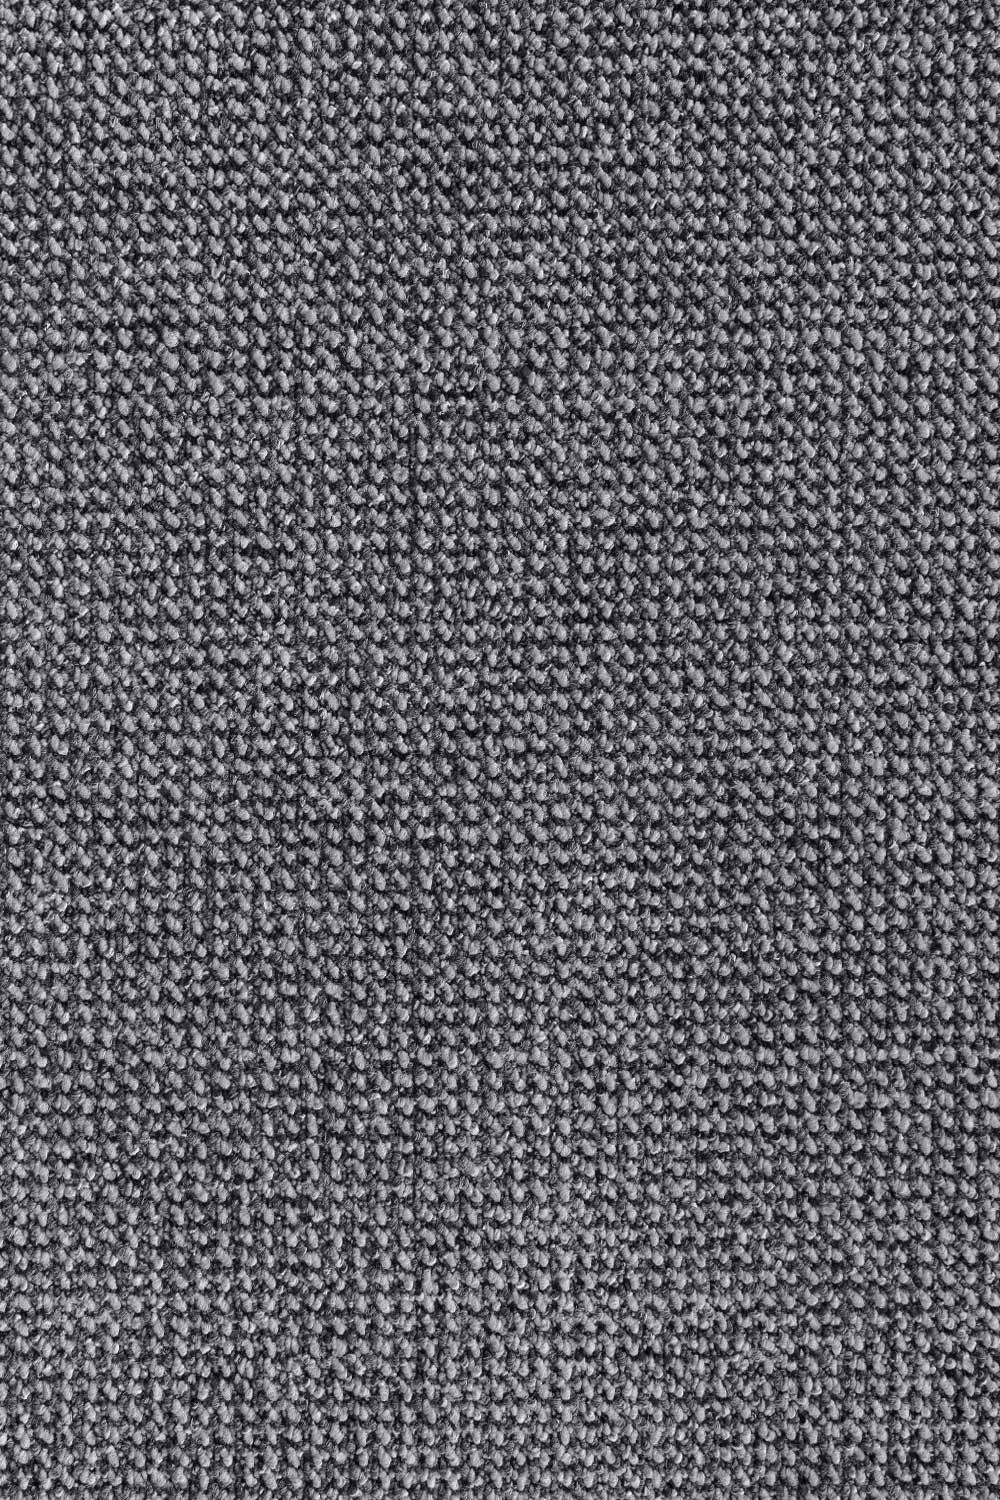 Metrážny koberec TILBURG/TITAN 1426 400 cm